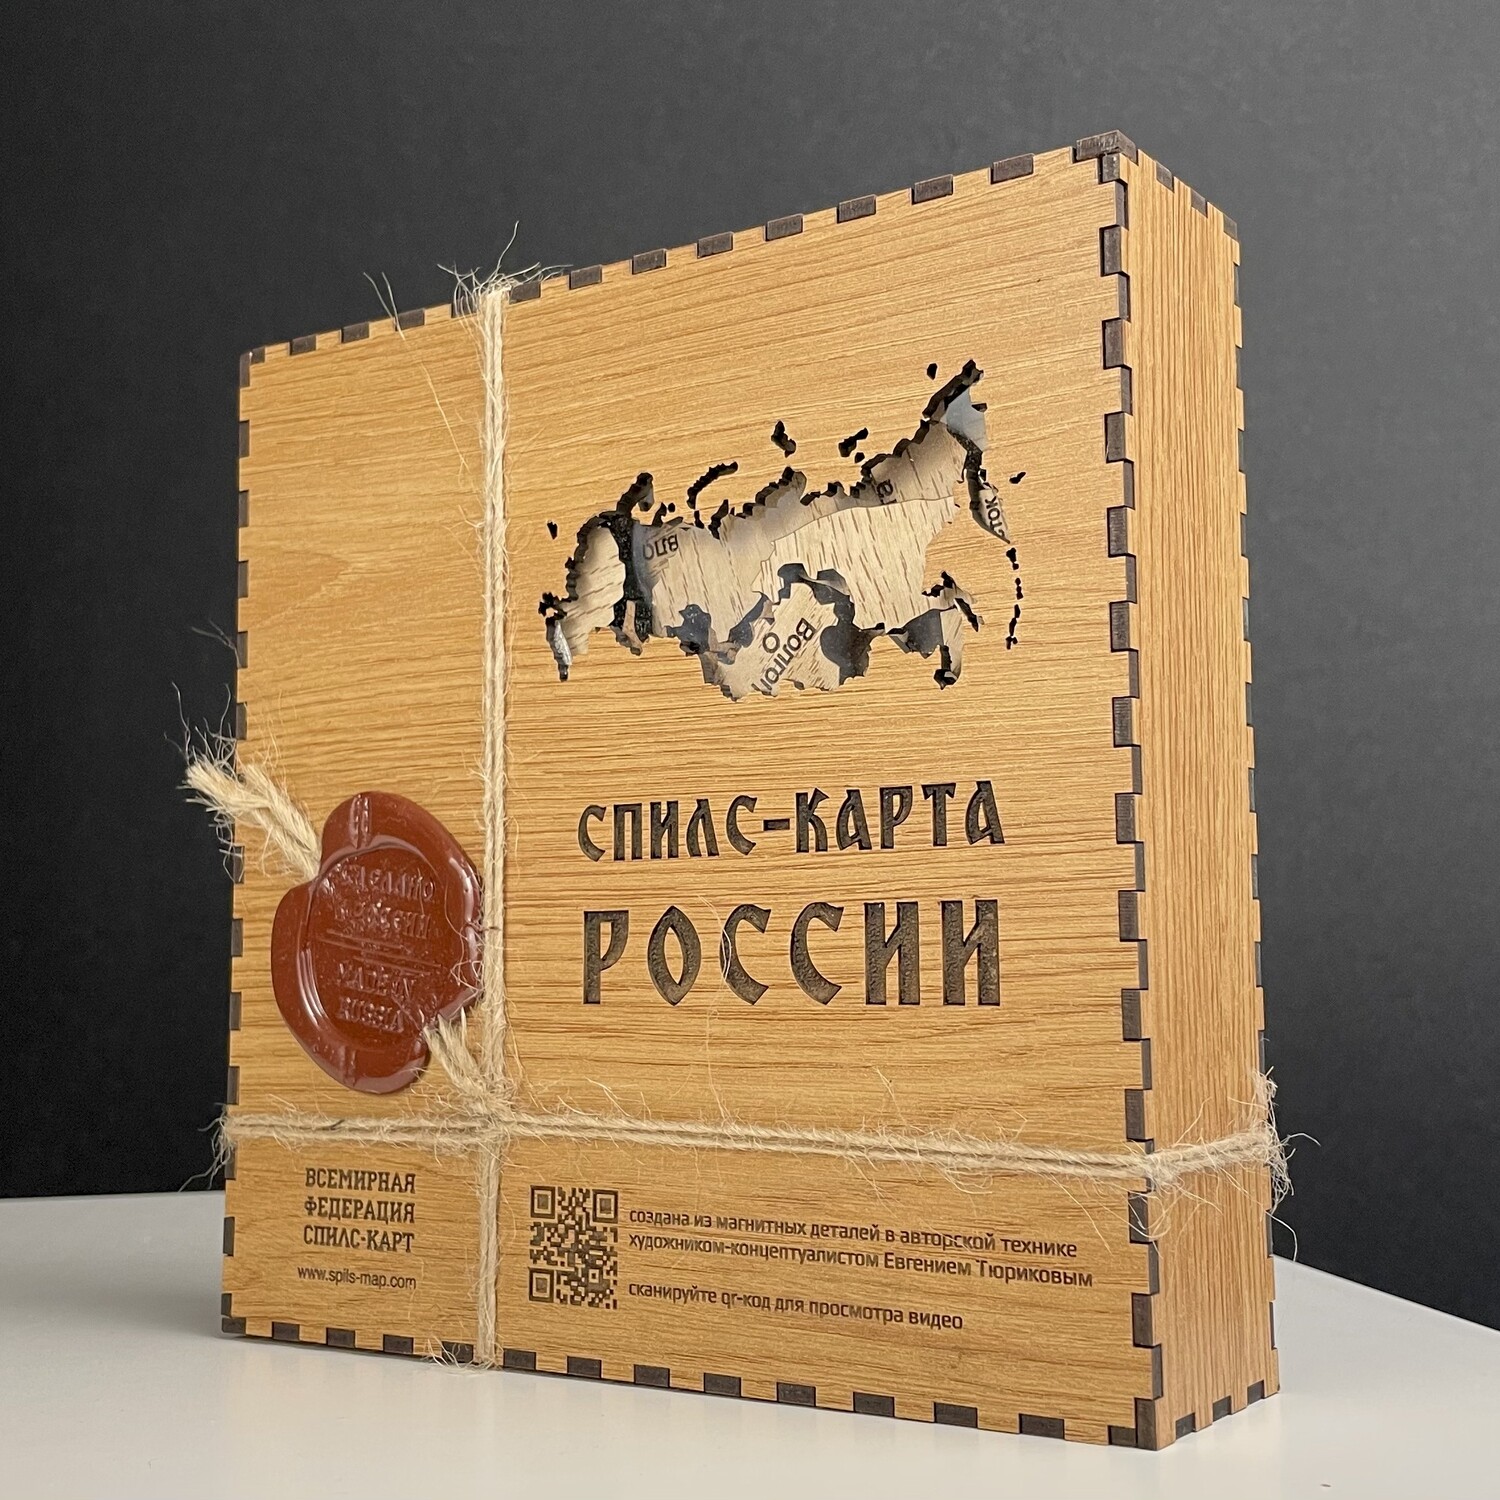 Cпилс-карта России в коробке с магнитной подложкой